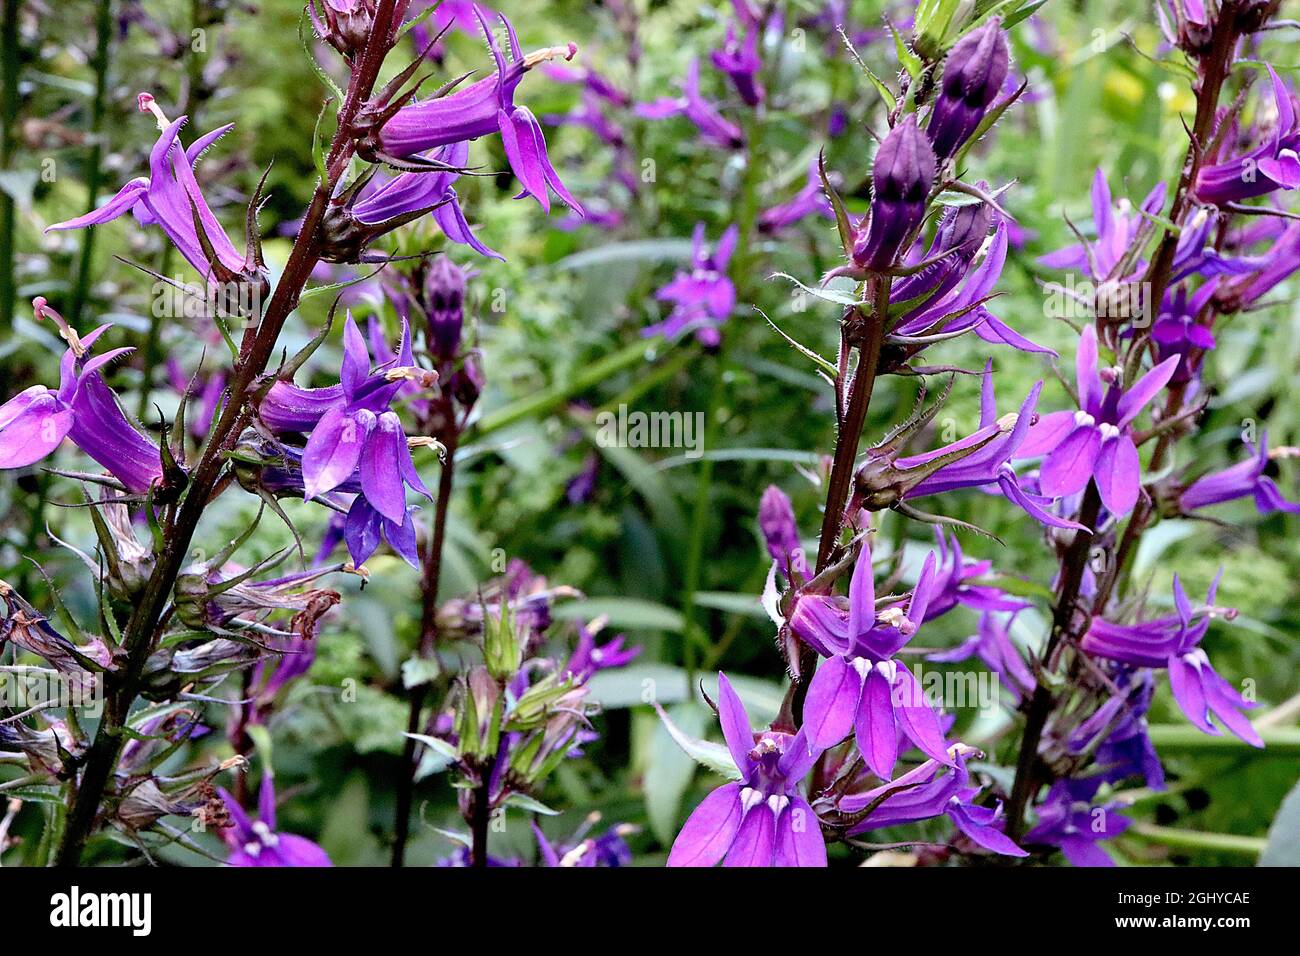 Lobelia x speciosa «Vedrariensis» cardinal flower Vedrariensis - remi verticali di fiori violetti con occhi bianchi e foglie a lancia stretta, Regno Unito Foto Stock